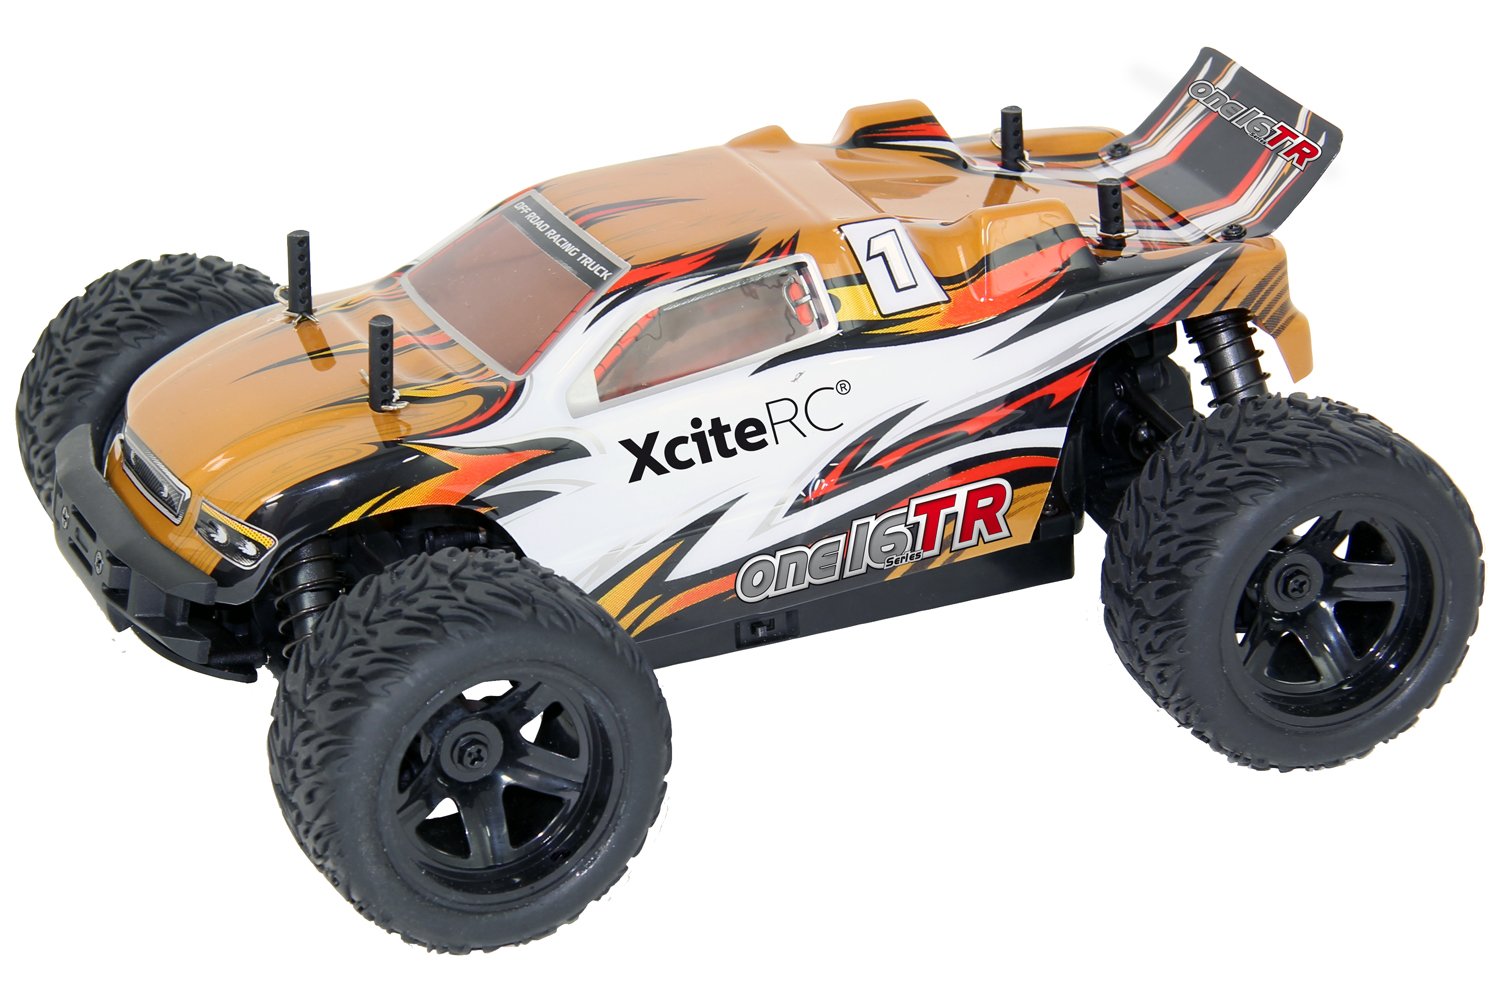 XciteRC 30504000 RC Auto Truggy one16 TR, 4WD Ready to Race Modellauto, 1:16 mit 2.4 GHz Fernsteuerung, Gold